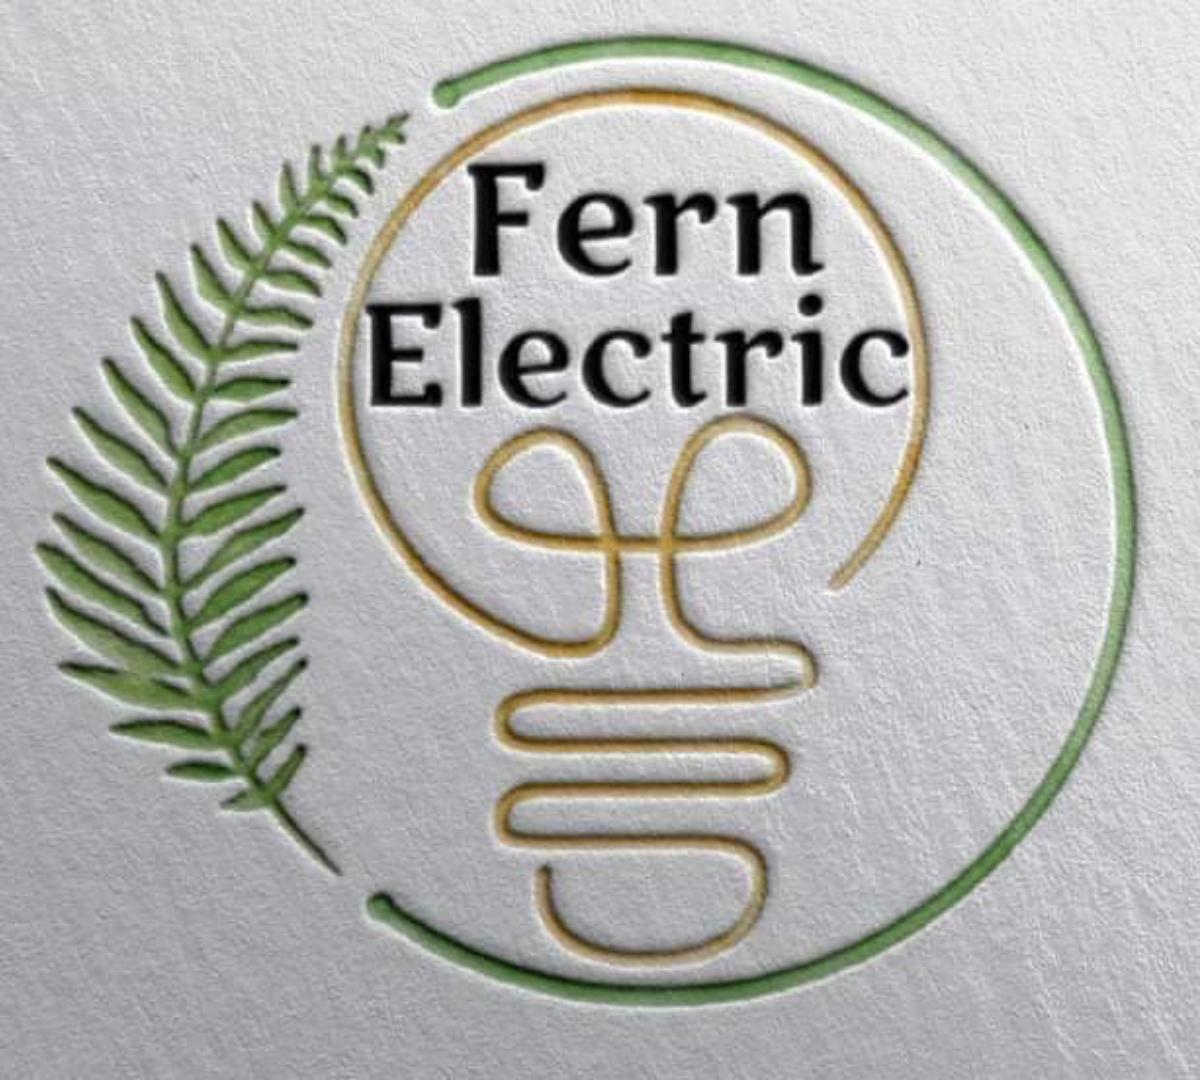 Fern Electric